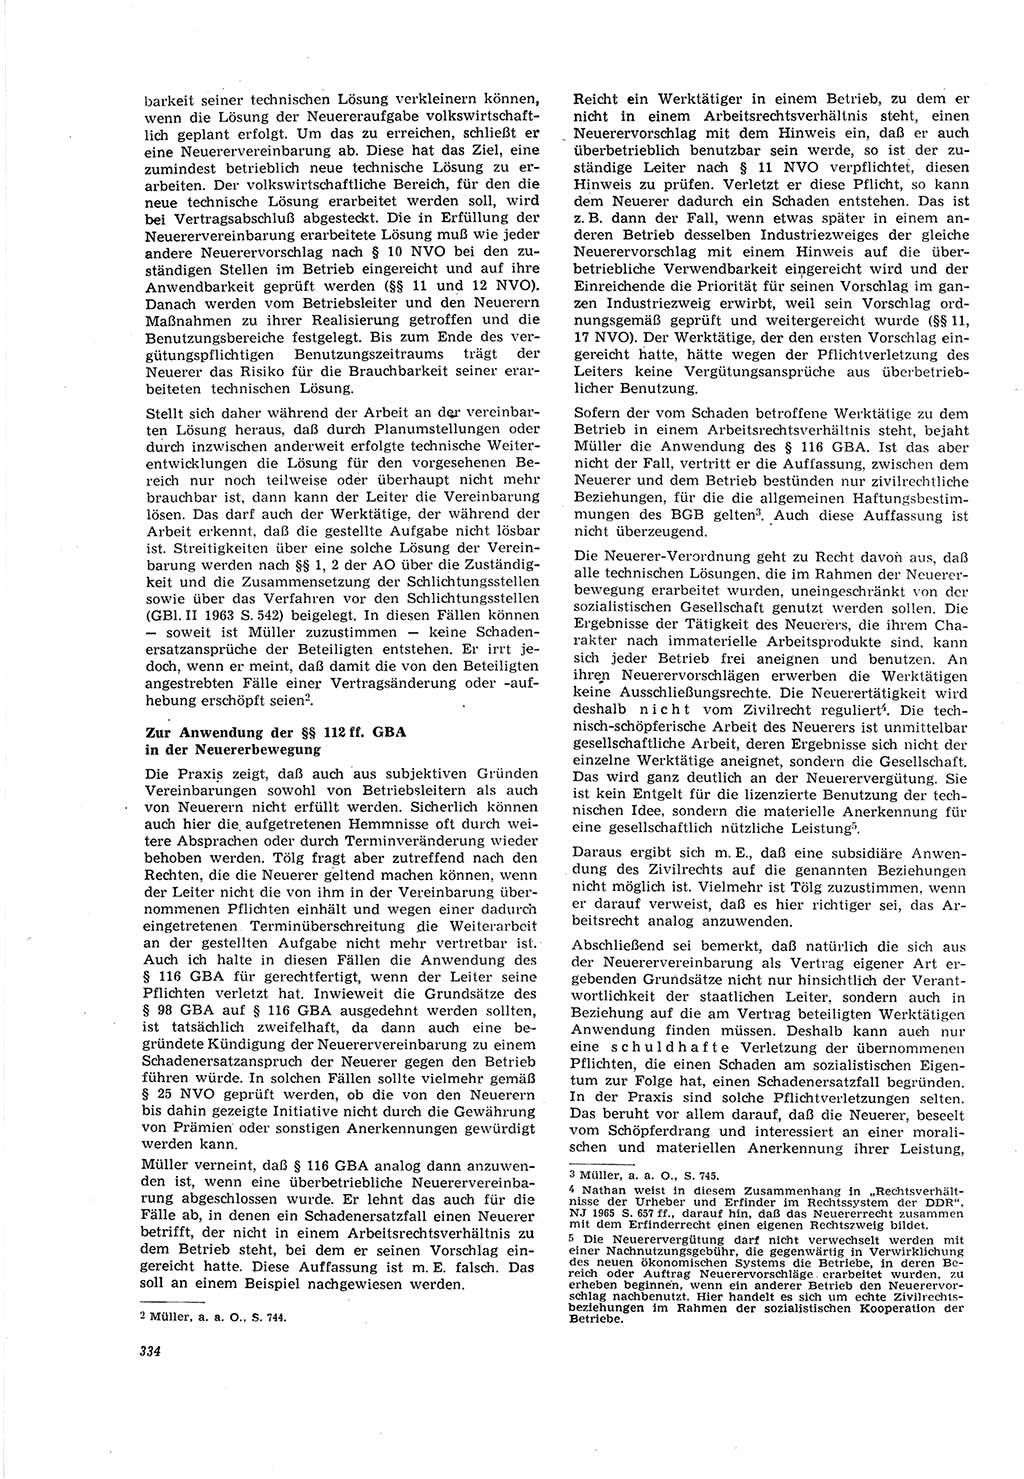 Neue Justiz (NJ), Zeitschrift für Recht und Rechtswissenschaft [Deutsche Demokratische Republik (DDR)], 20. Jahrgang 1966, Seite 334 (NJ DDR 1966, S. 334)